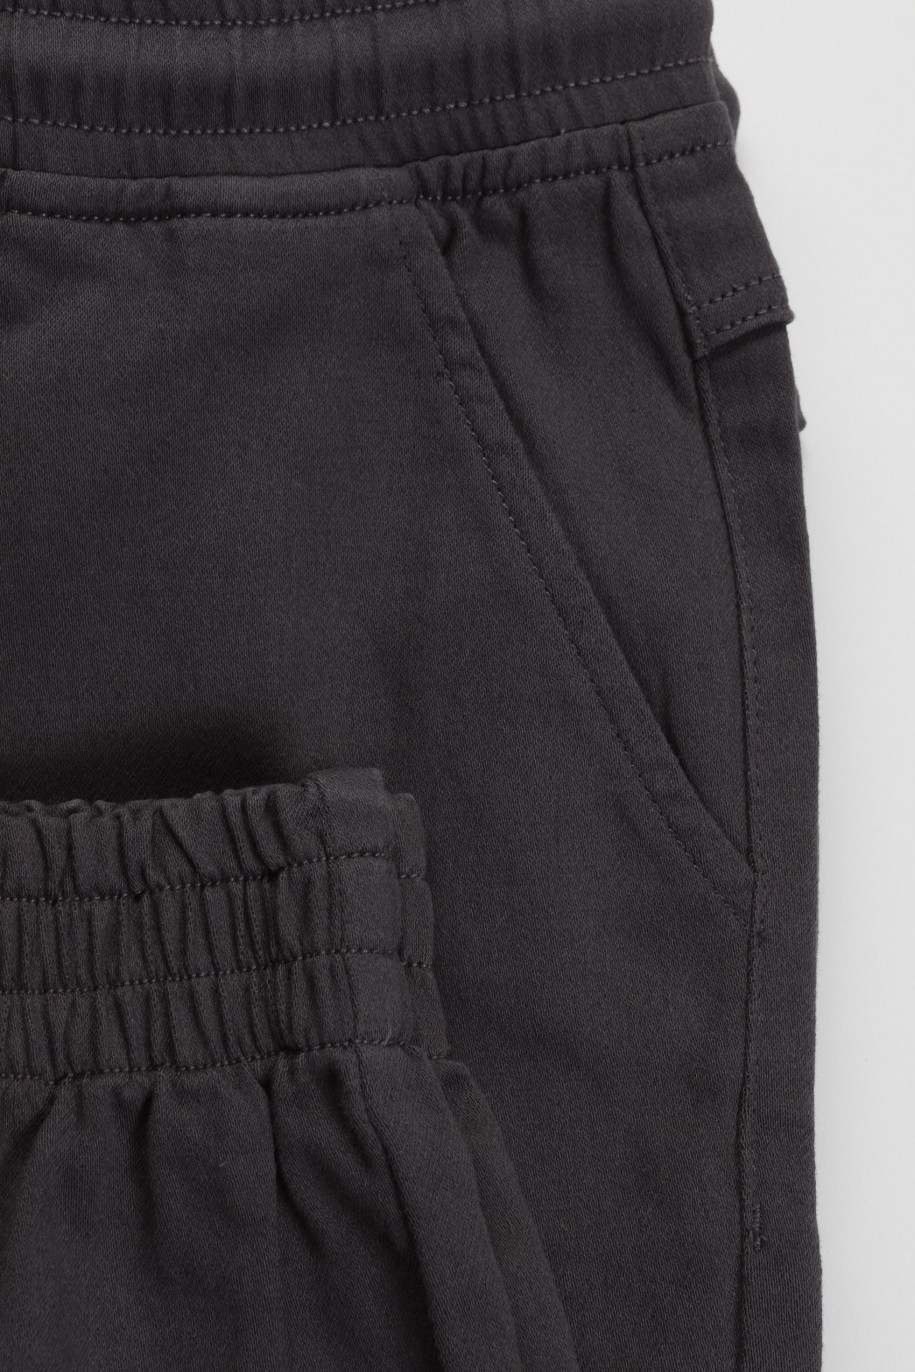 Szare spodnie typu bojówki z przestrzennymi kieszeniami - 45876